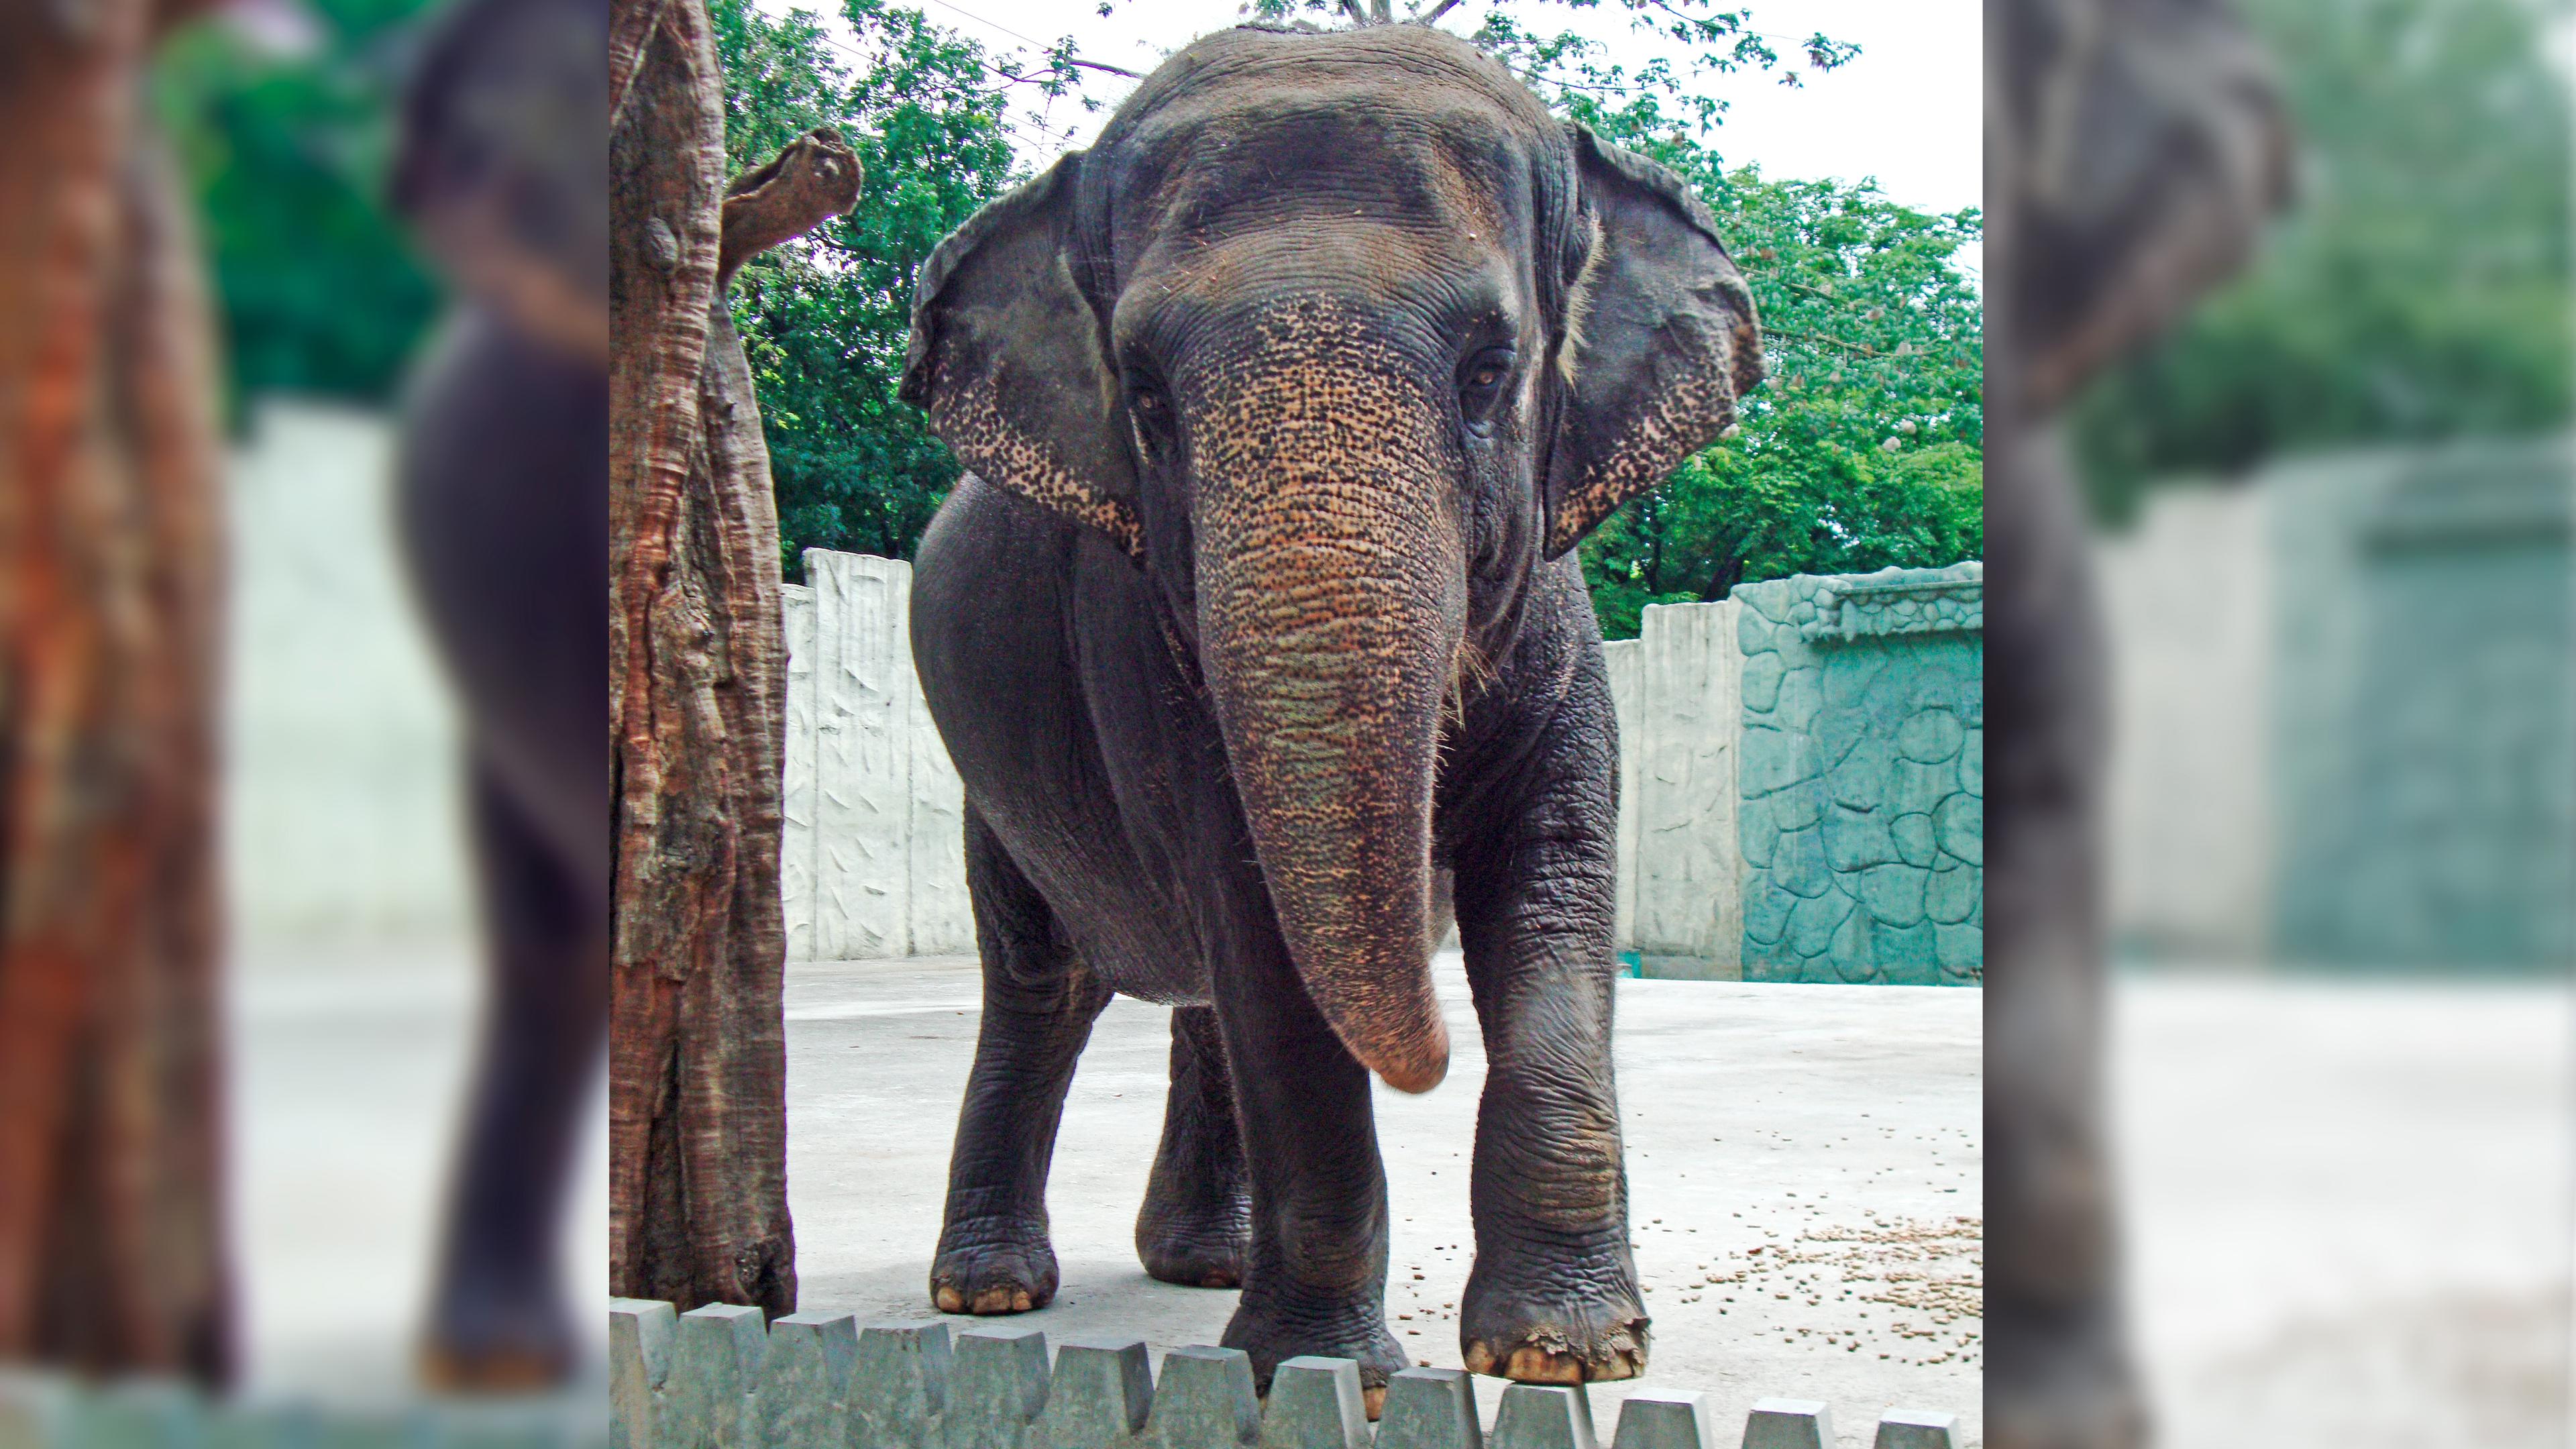 Elefantendame Mali im Zoo von Manila gestorben